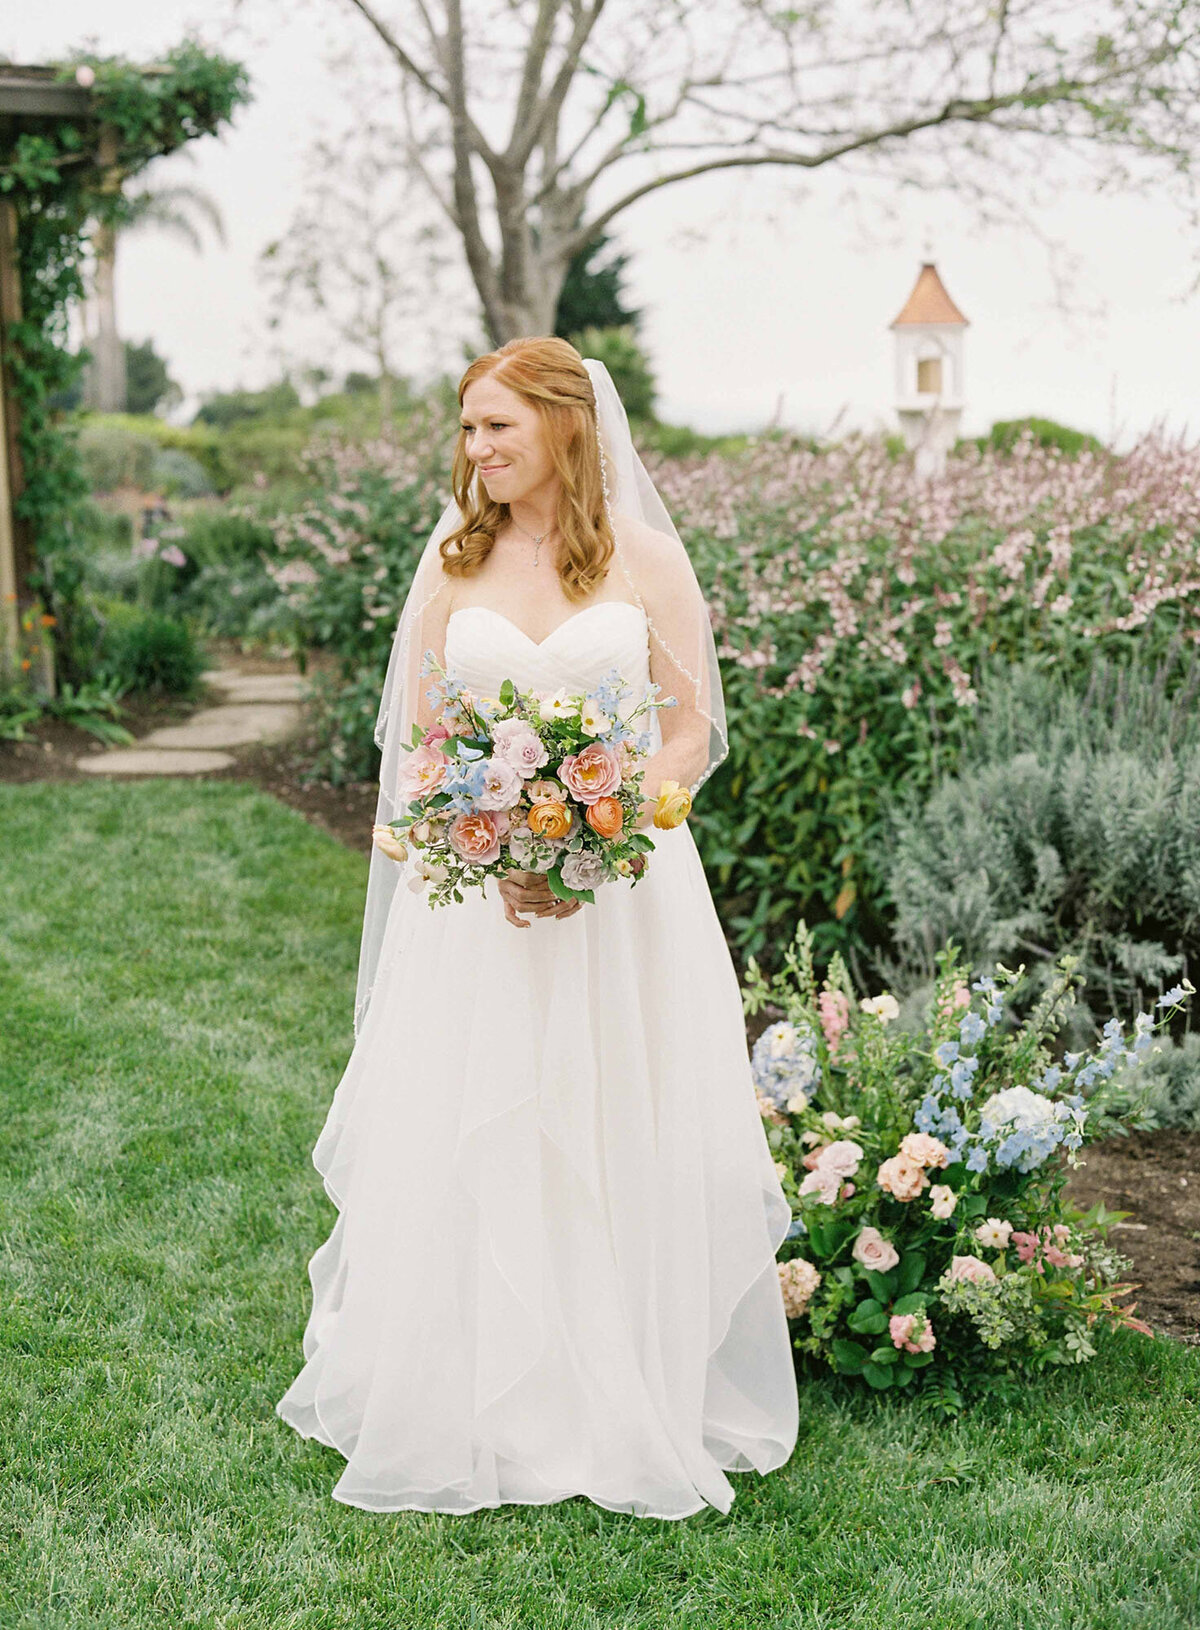 15santa-barbara-estate-wedding-planner-bridal-bouquet-yellow-orange-blue-white-pink-pastels